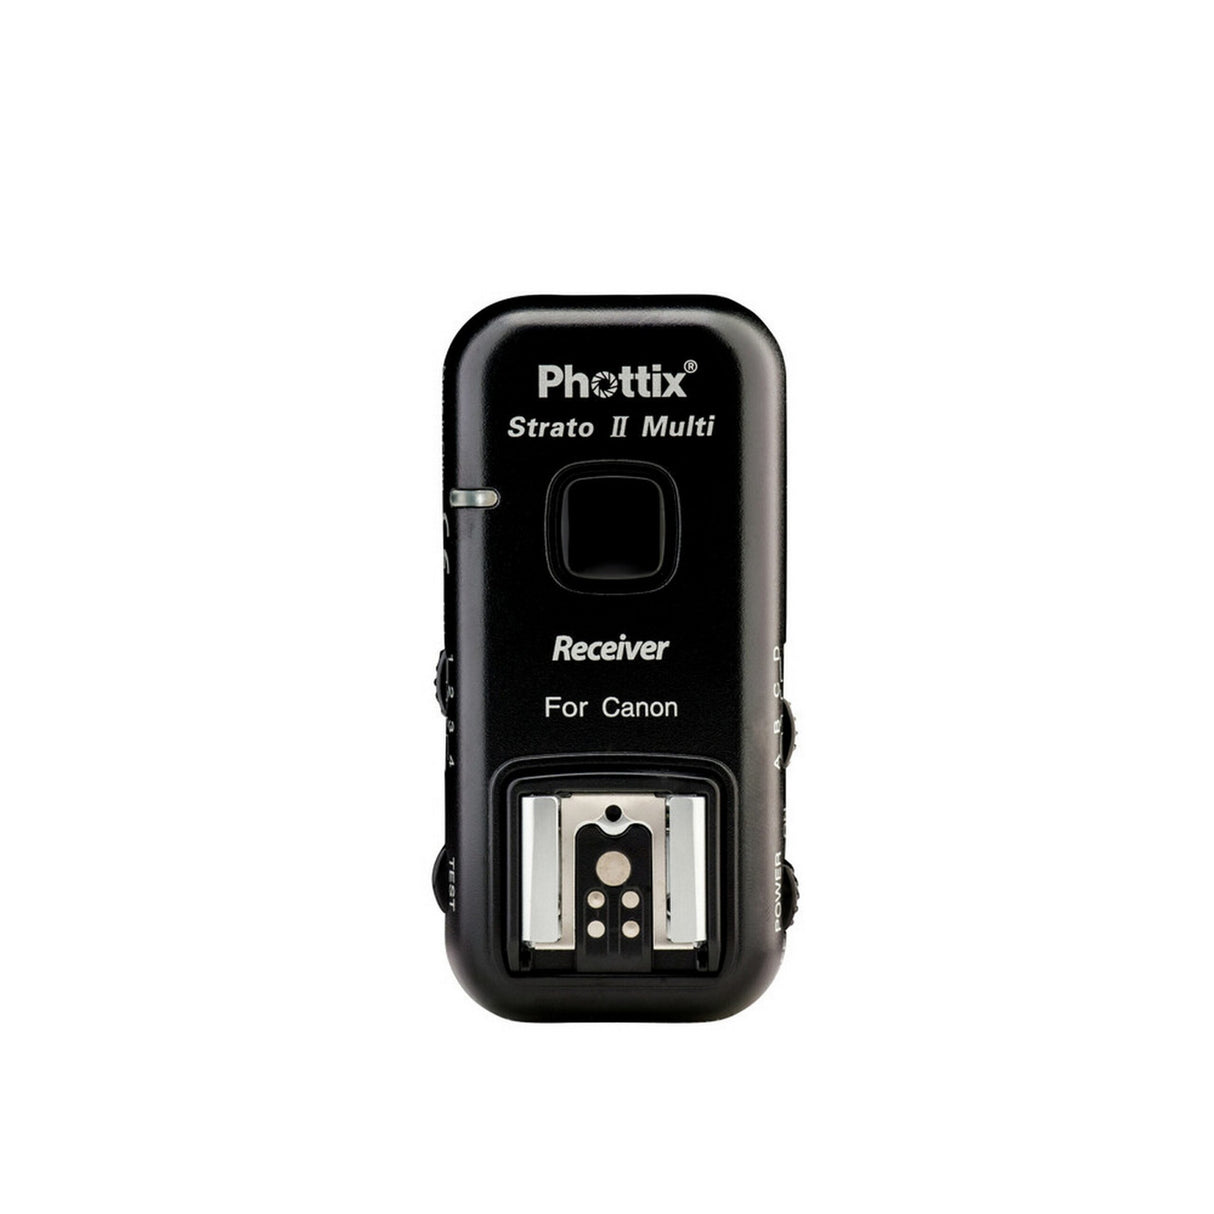 Phottix Strato II Multi 5-In-1 Receiver for Canon